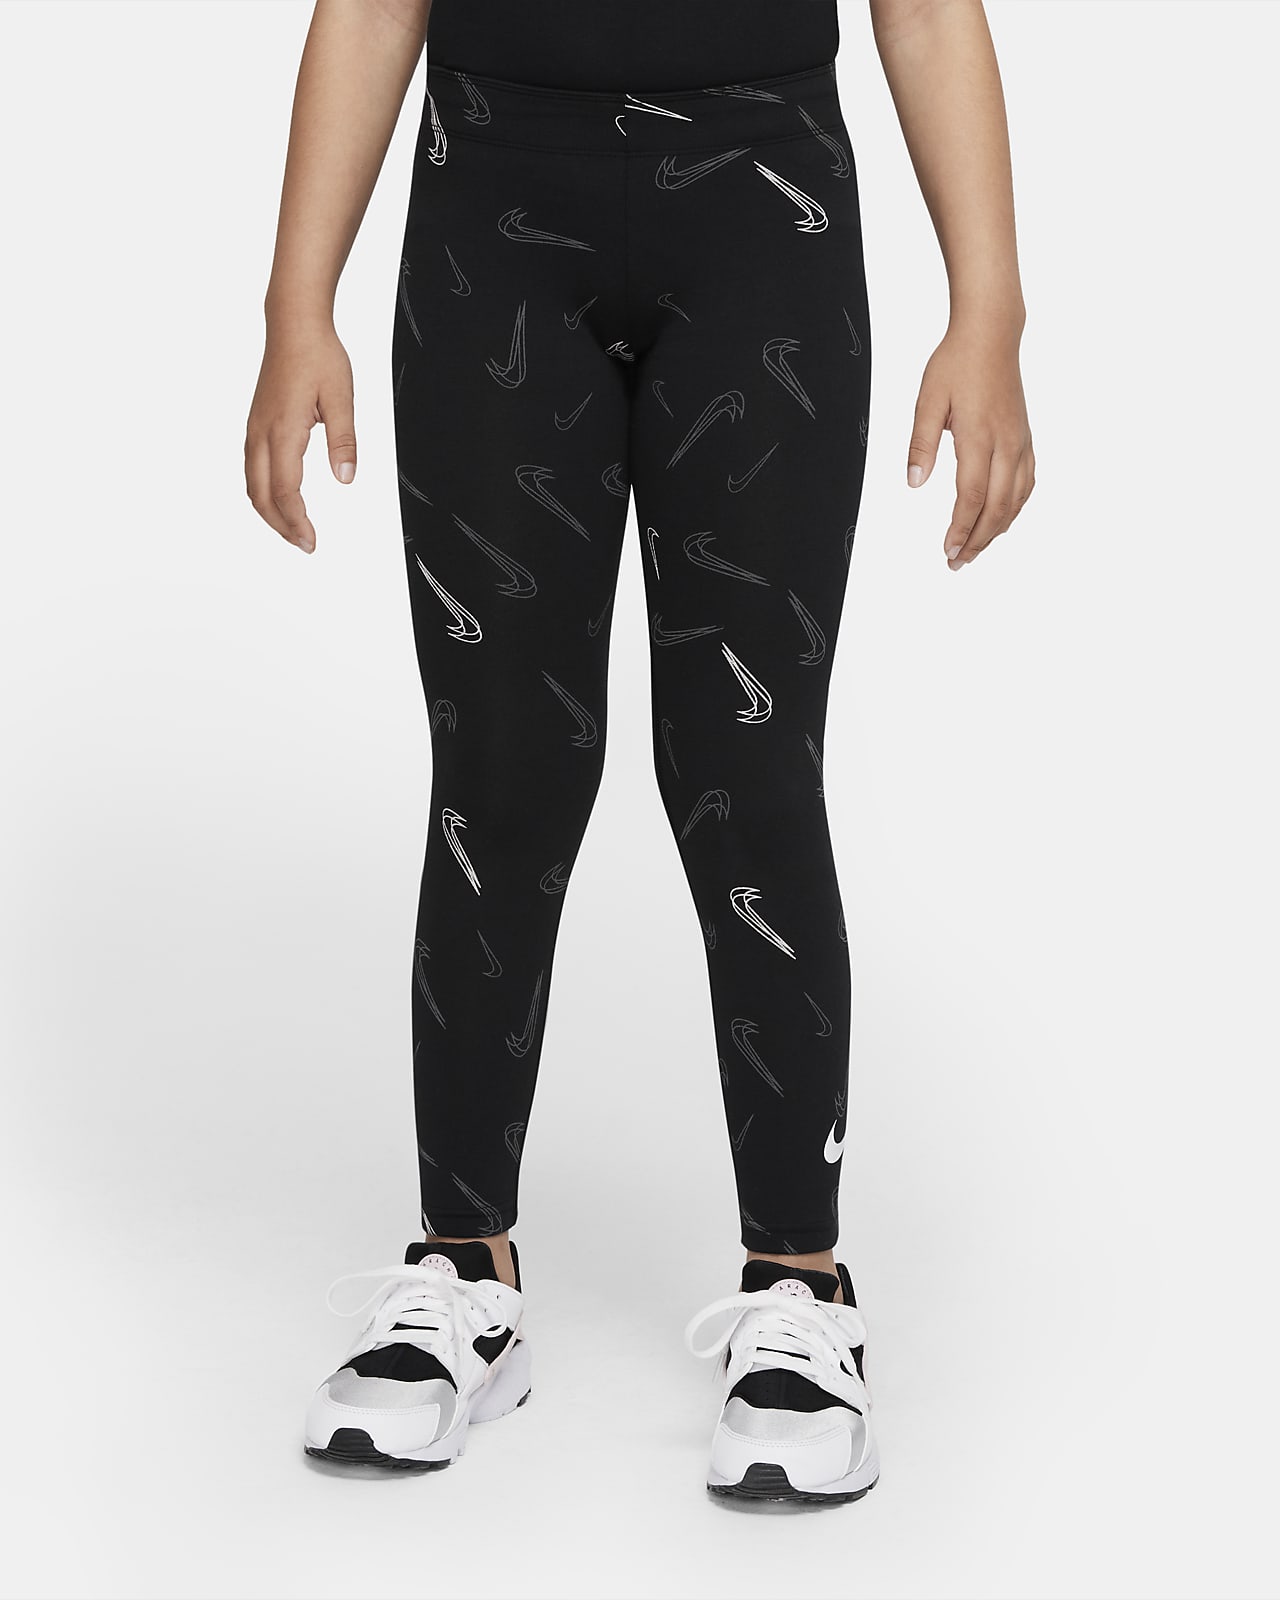 Nike Sportswear Tanz-Leggings mit Print für ältere Kinder (Mädchen)